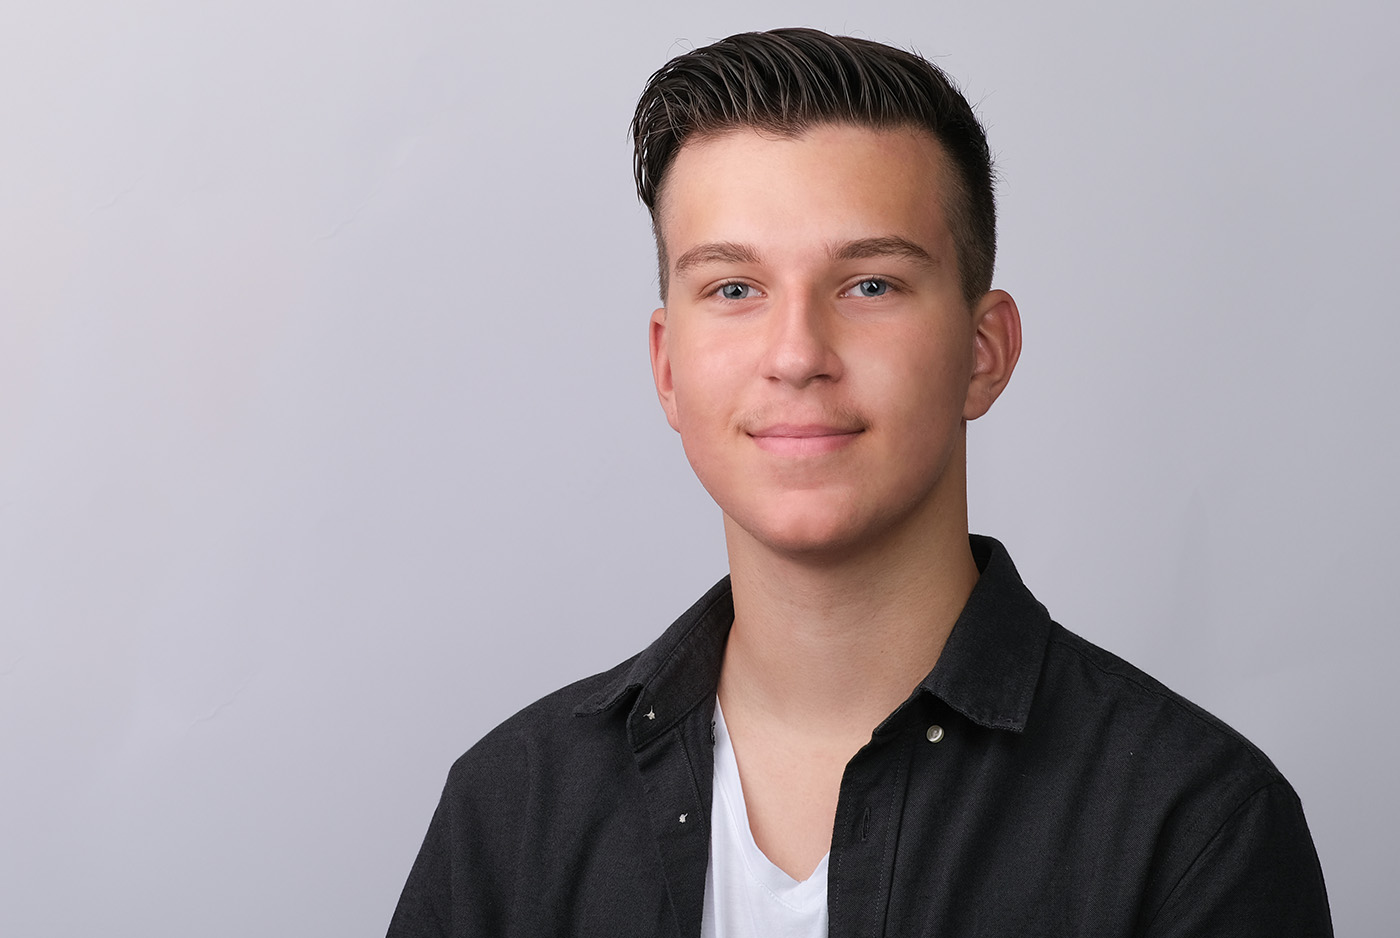 Bewerbungsfoto eines männlichen Teenagers mit weißem T-Shirt auf hellgrauem Hintergrund, aufgenommen im Fotostudio KARRIEREPORTRAITS in Dortmund